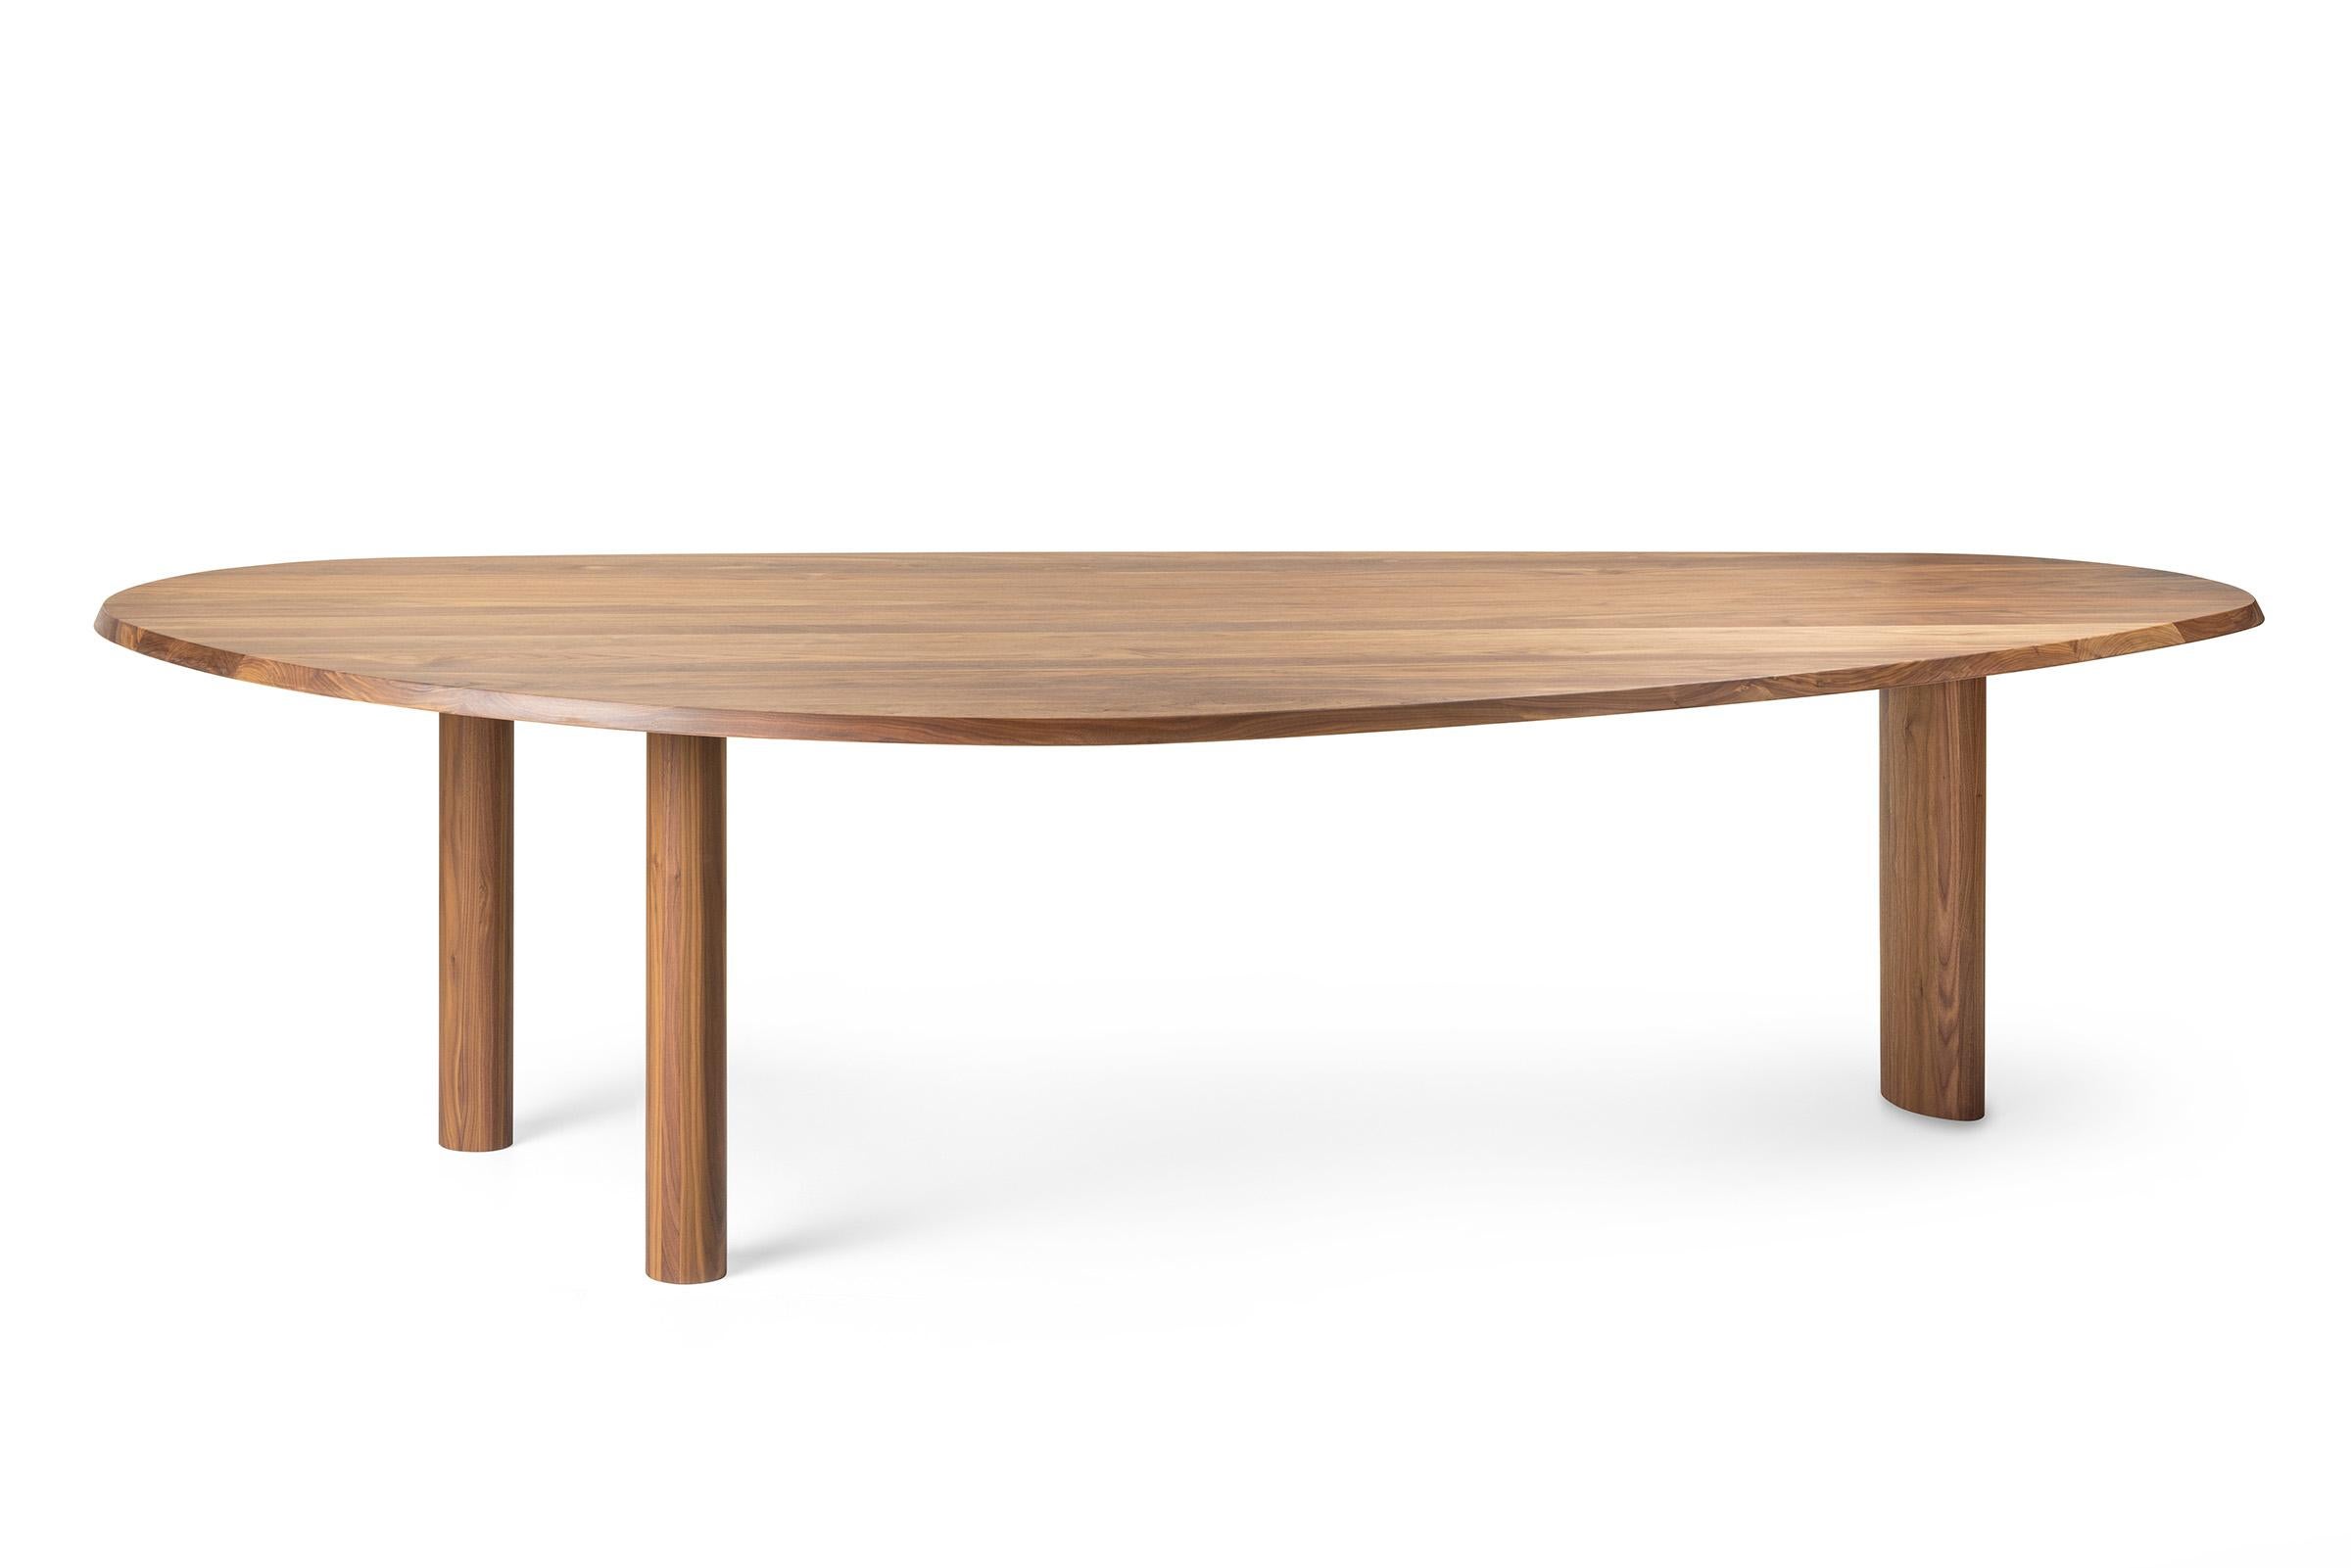 Dieser Tisch aus 100% massivem Nussbaumholz ist nicht rund, nicht oval, nicht rechteckig, sondern sehr schön organisch. Das Oberteil ist ein wenig asymmetrisch. Das Nussbaumholz kann naturgeölt oder matt lackiert werden. 

Die Beine, die ebenfalls